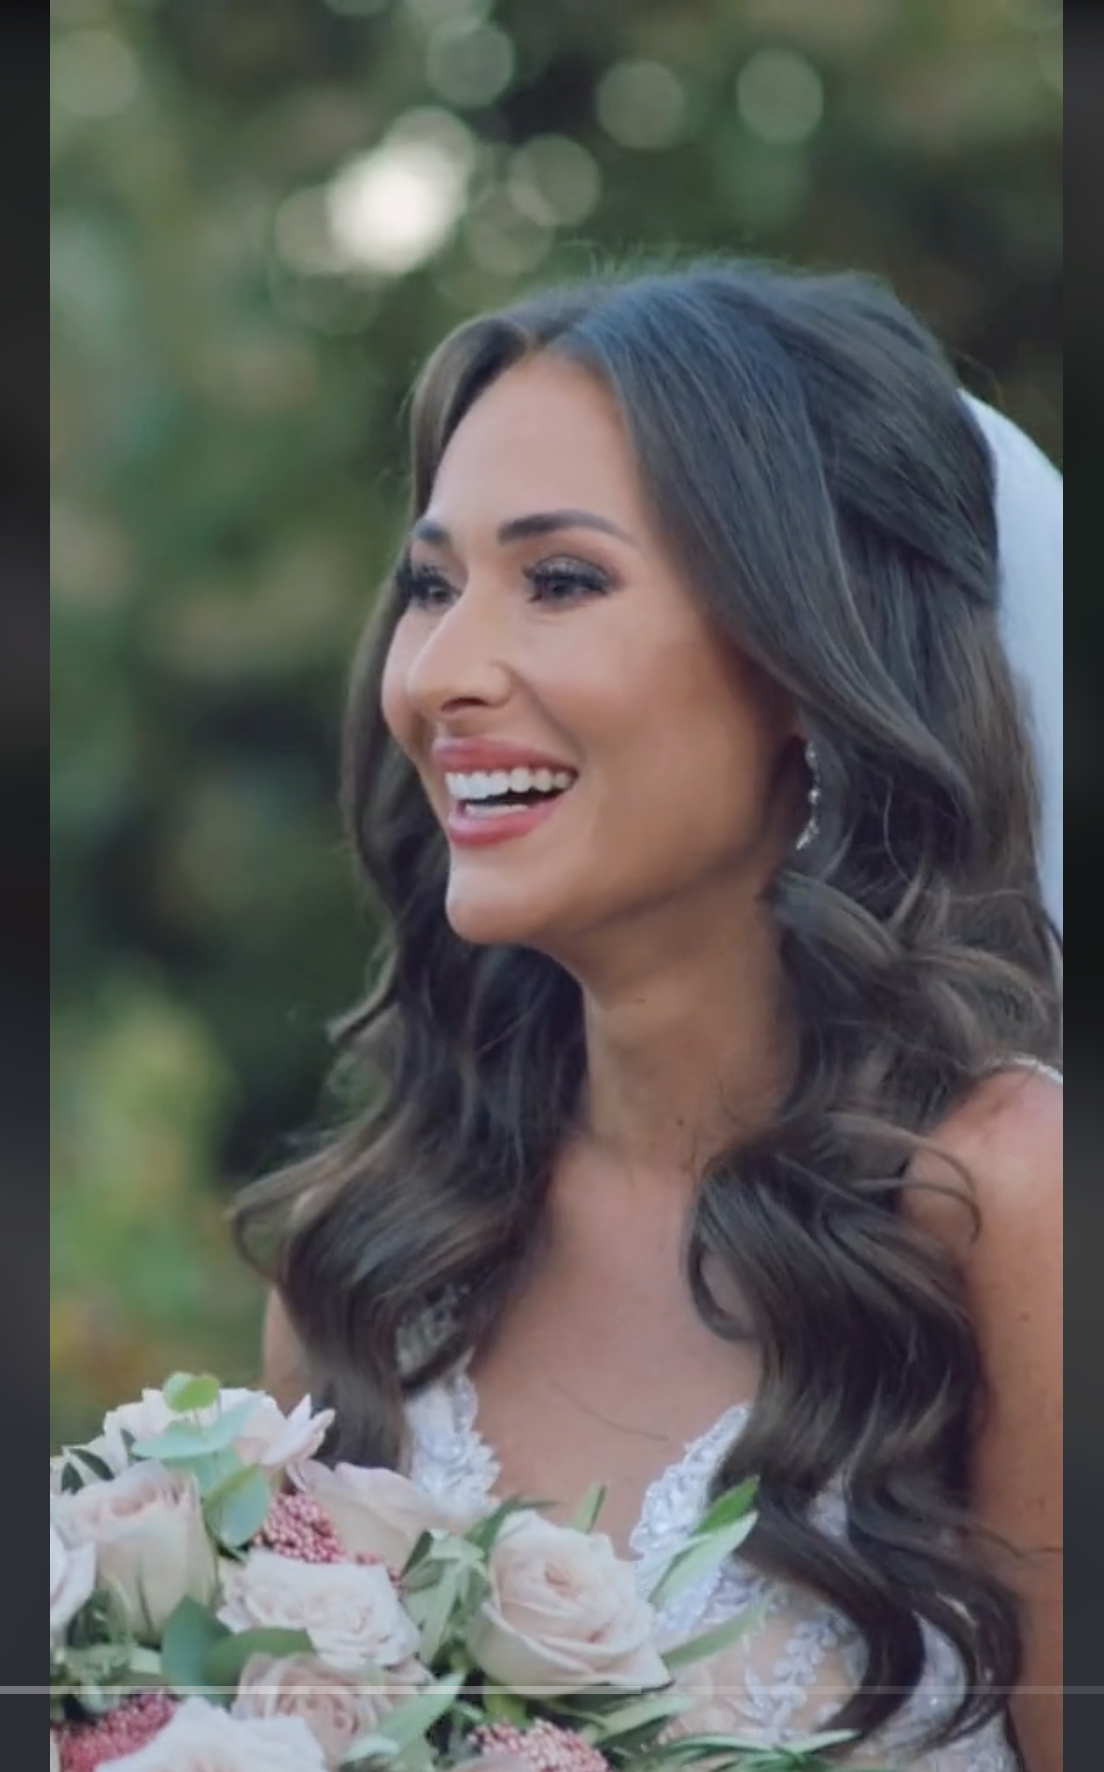 Becky Jefferies an ihrem Hochzeitstag, zu sehen in einem Video vom 5. Mai 2022 | Quelle: tiktok.com/@jetsetbecks